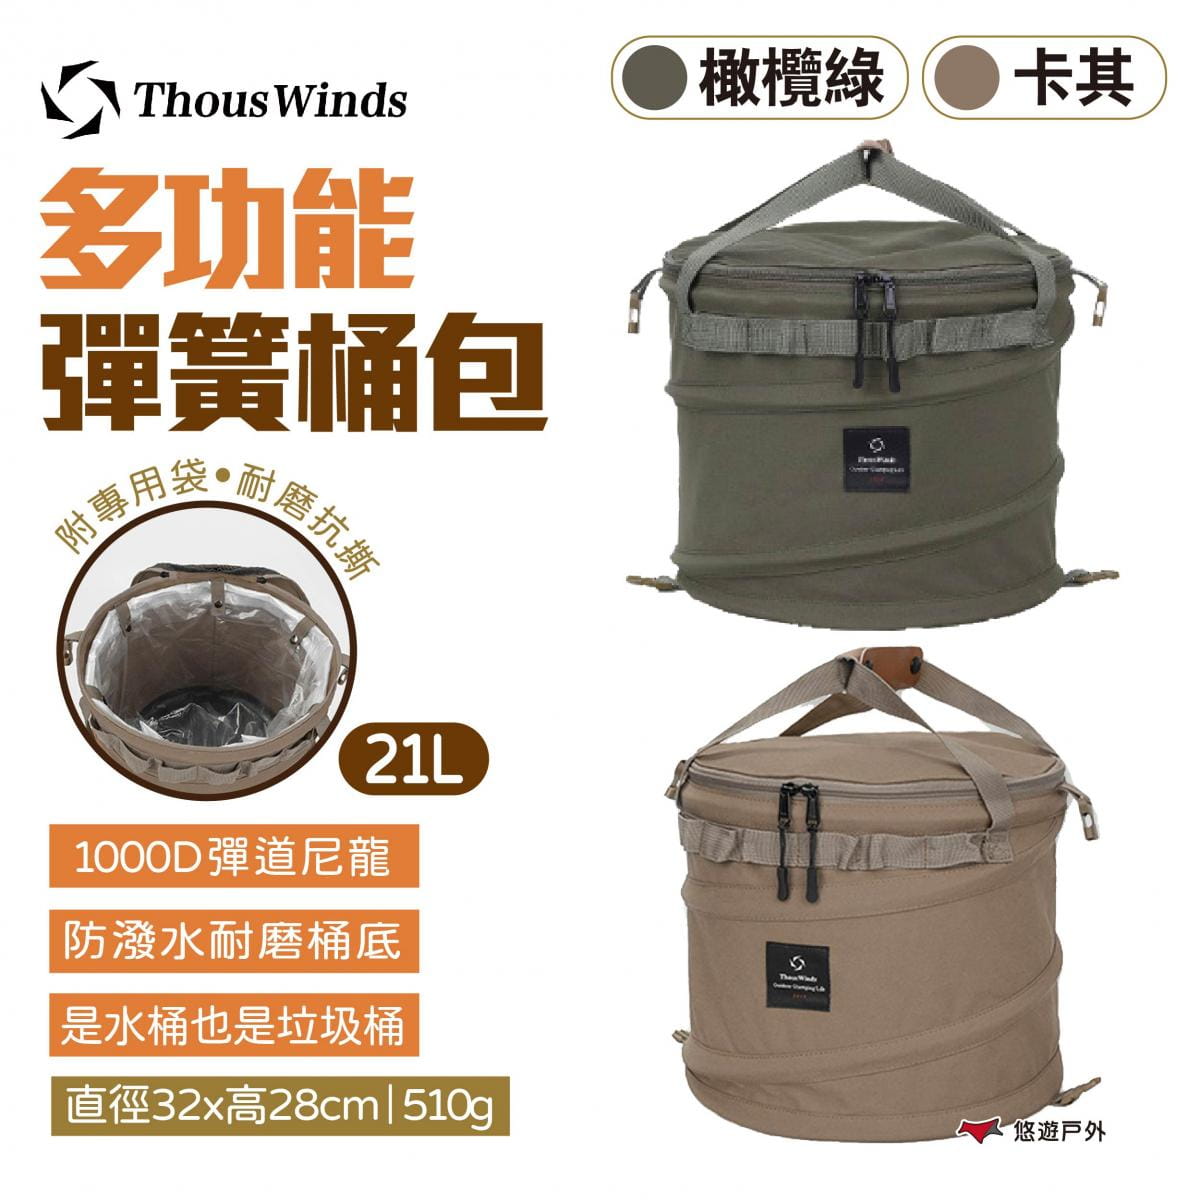 【Thous Winds】多功能彈簧桶包 TW7040-G.K 兩色 (悠遊戶外) 1